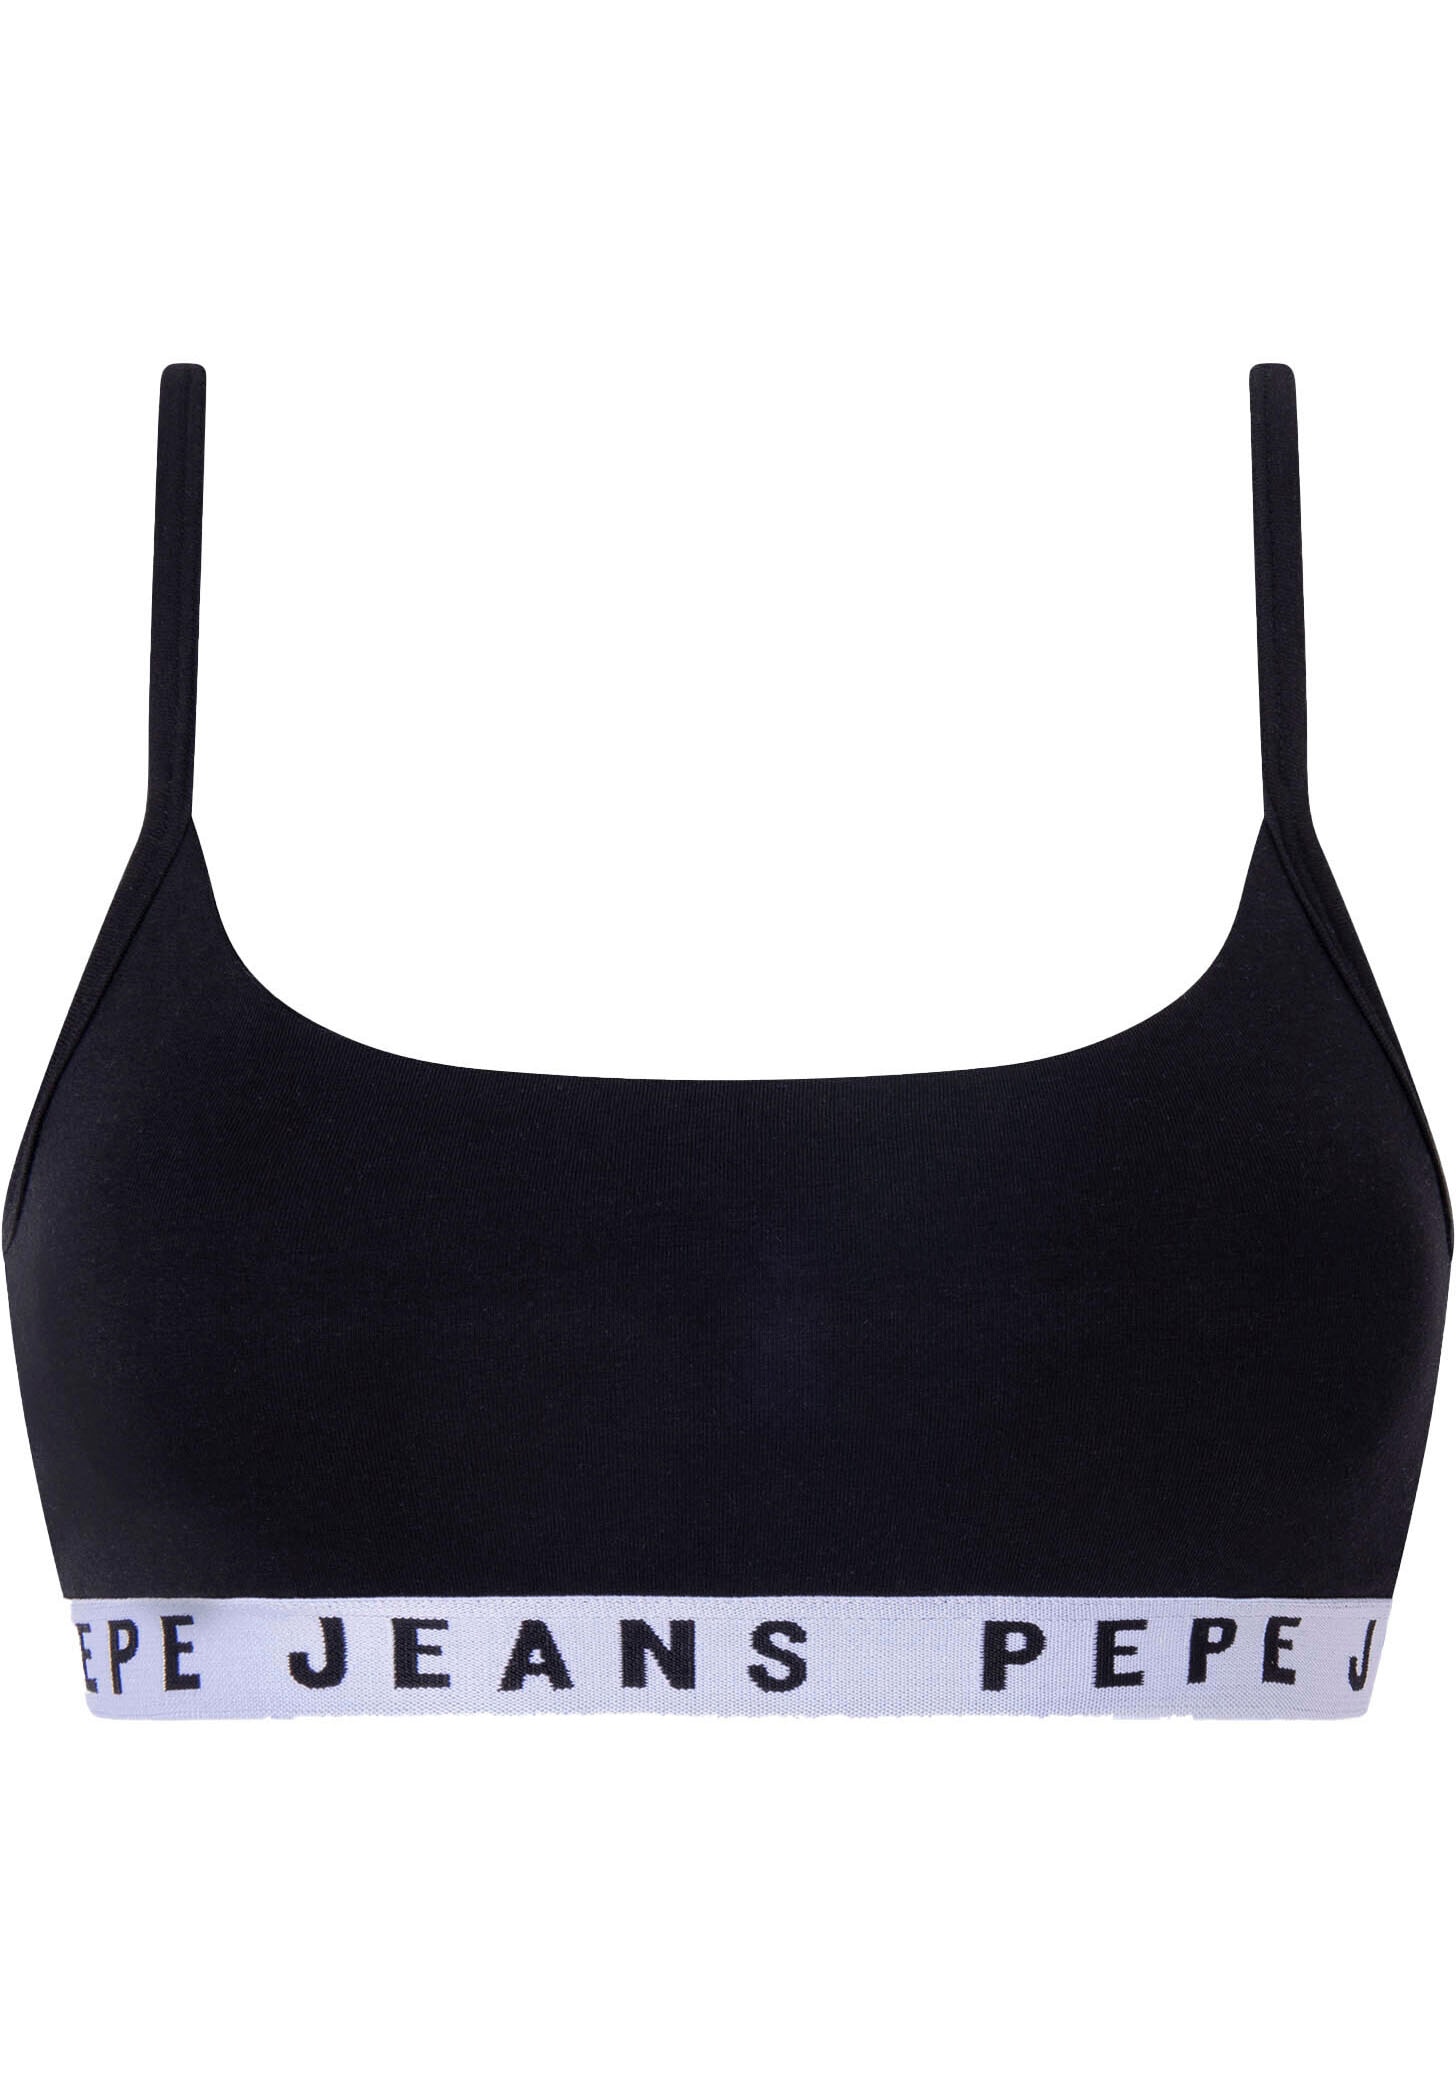 Pepe Jeans Bustier »Logo« online bestellen